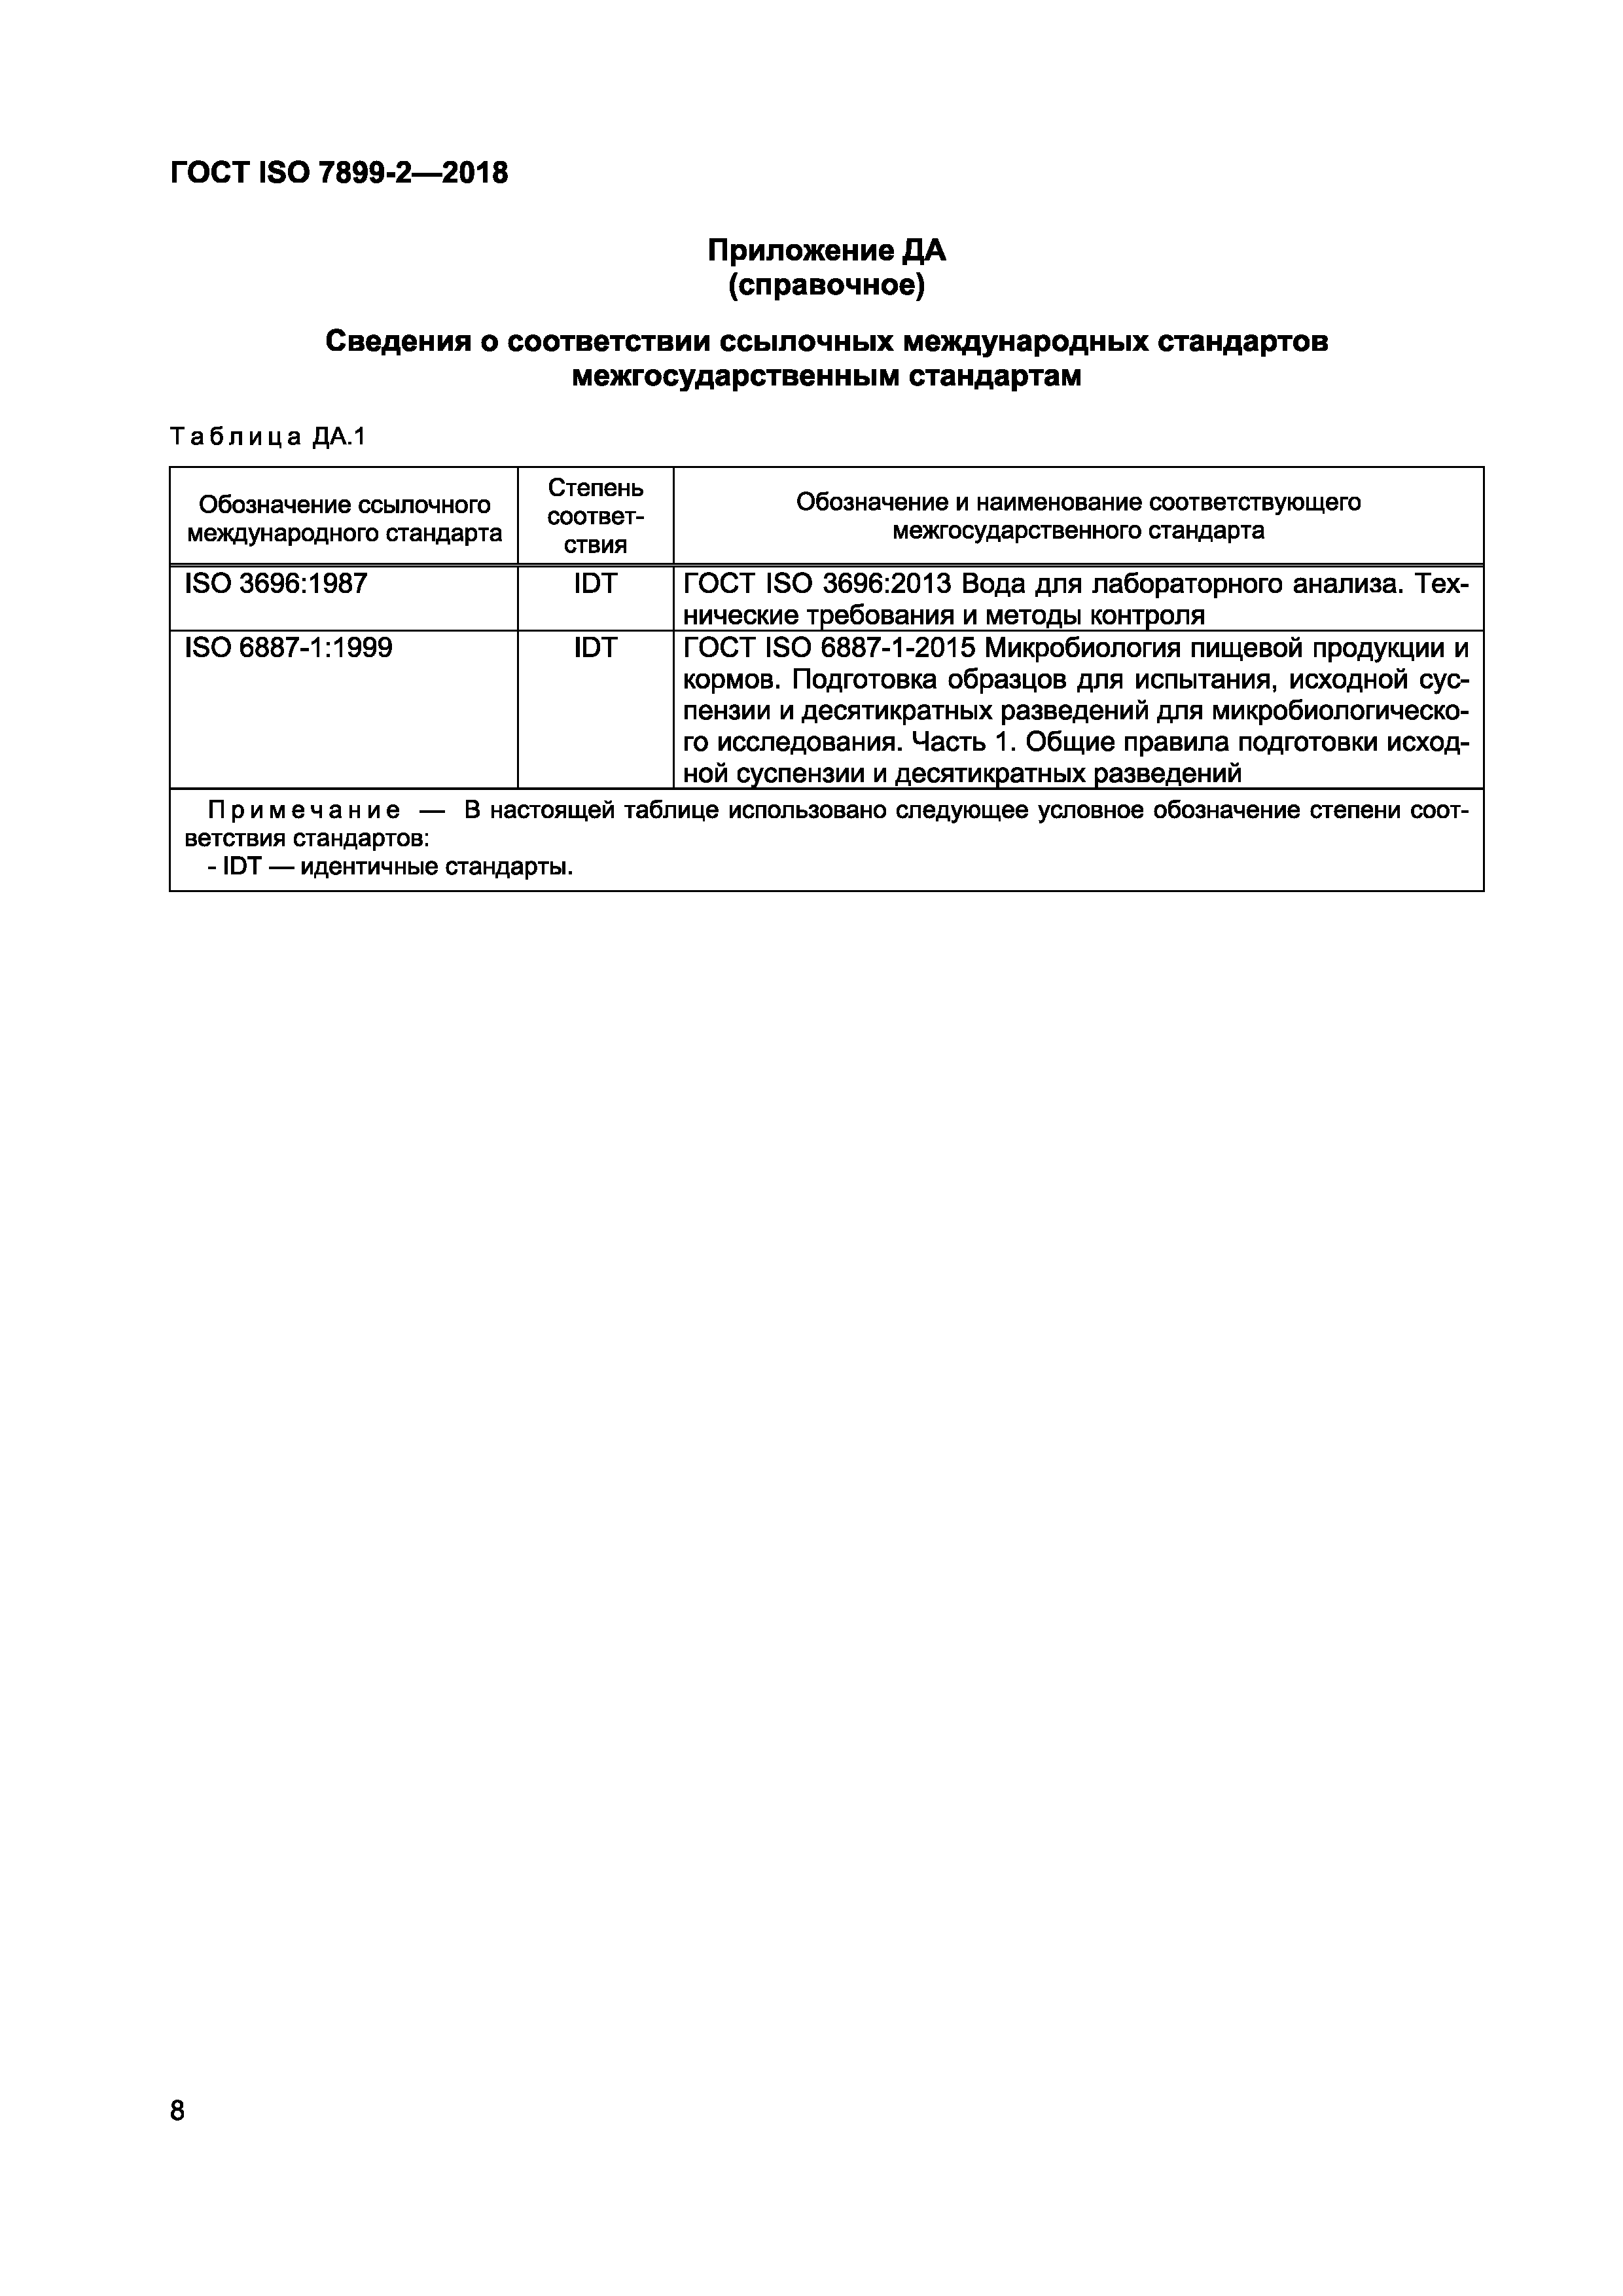 ГОСТ ISO 7899-2-2018